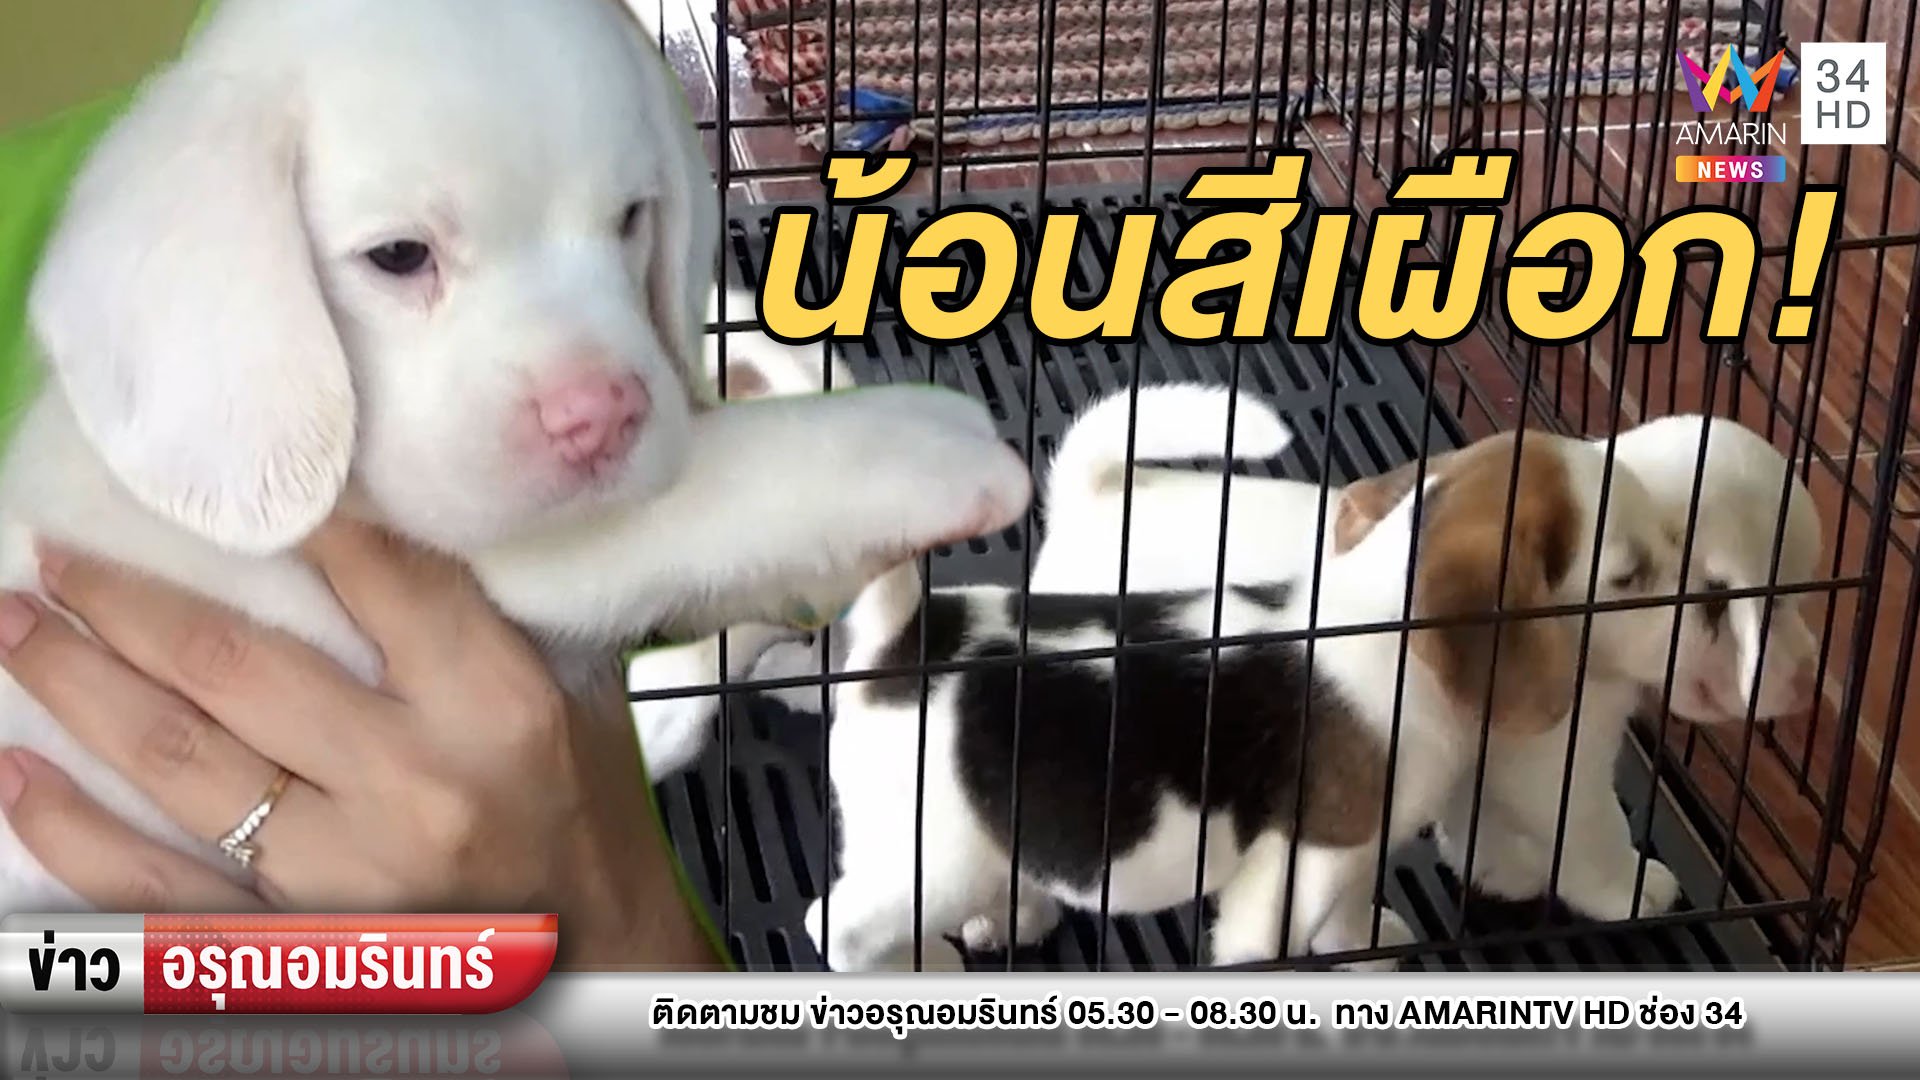 “น้องเมฆ” ลูกสุนัขพันธุ์บีเกิลสีขาวเผือก หนึ่งเดียวในไทย | ข่าวอรุณอมรินทร์ | 24 มี.ค. 64 | AMARIN TVHD34